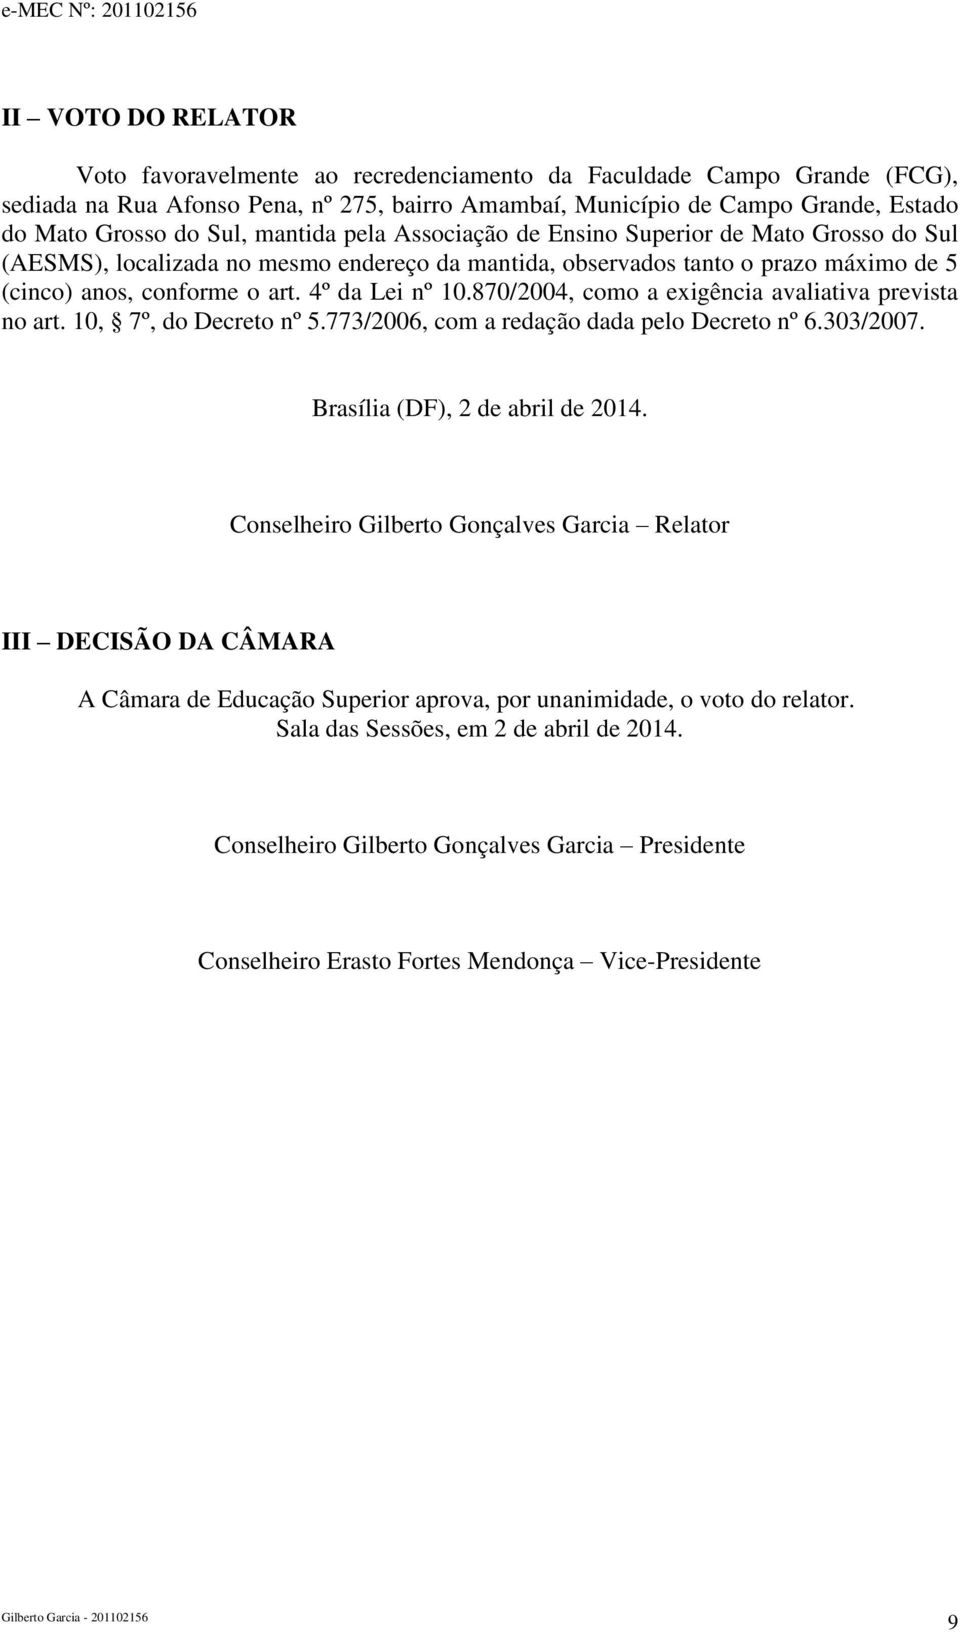 4º da Lei nº 10.870/2004, como a exigência avaliativa prevista no art. 10, 7º, do Decreto nº 5.77/2006, com a redação dada pelo Decreto nº 6.0/2007. Brasília (DF), 2 de abril de 2014.